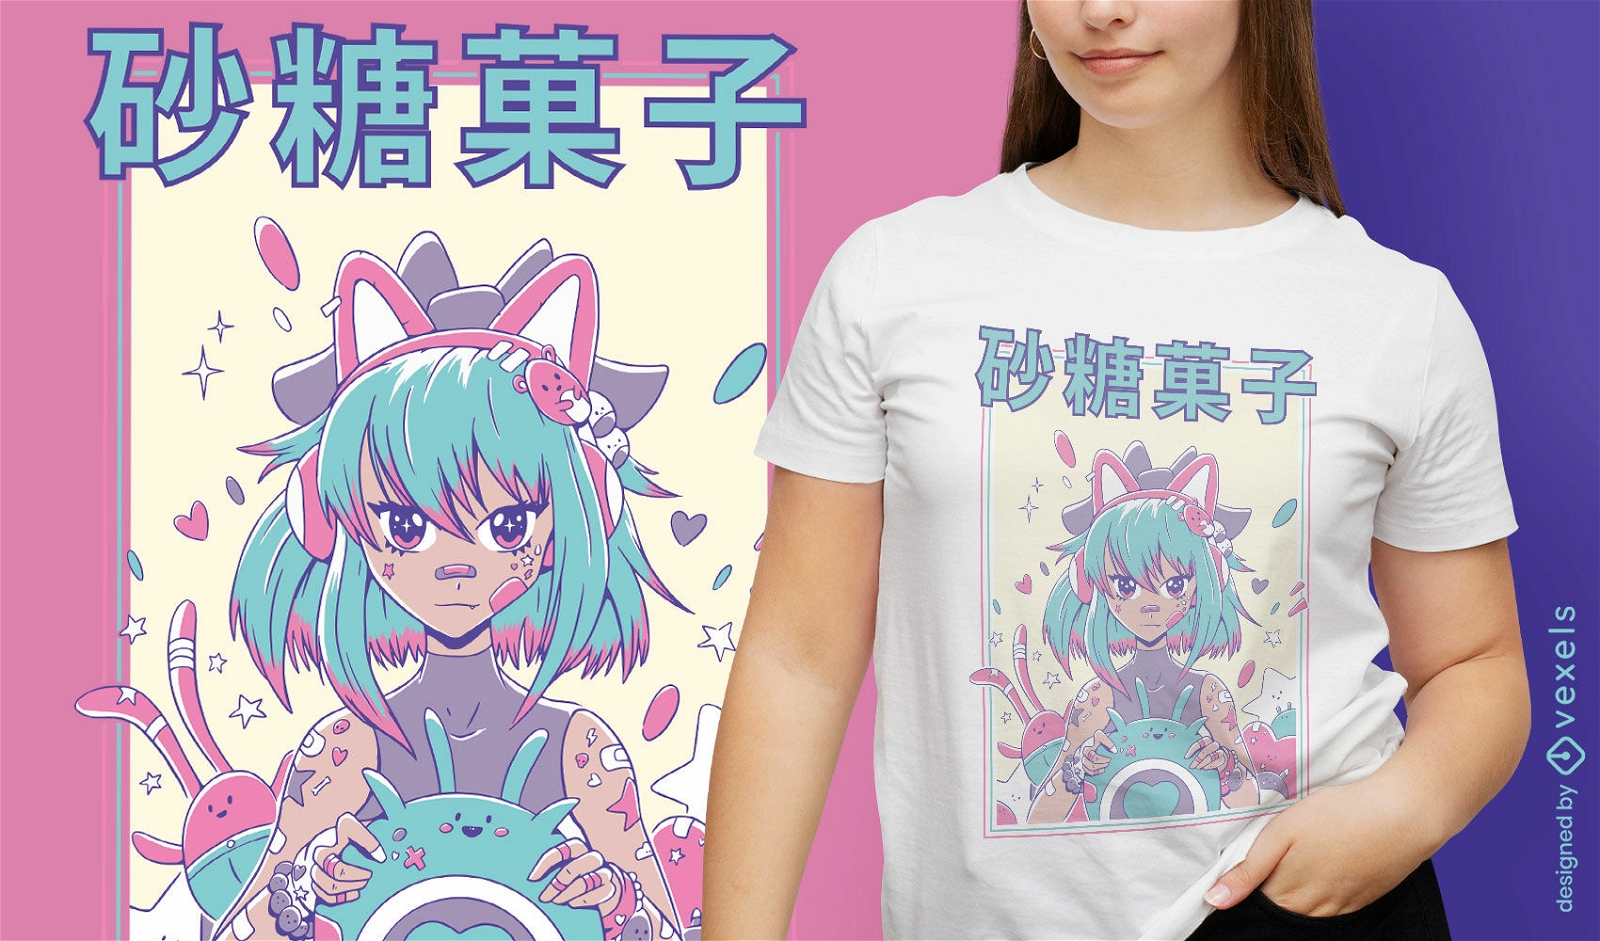 Cute anime gamer girl t-shirt design